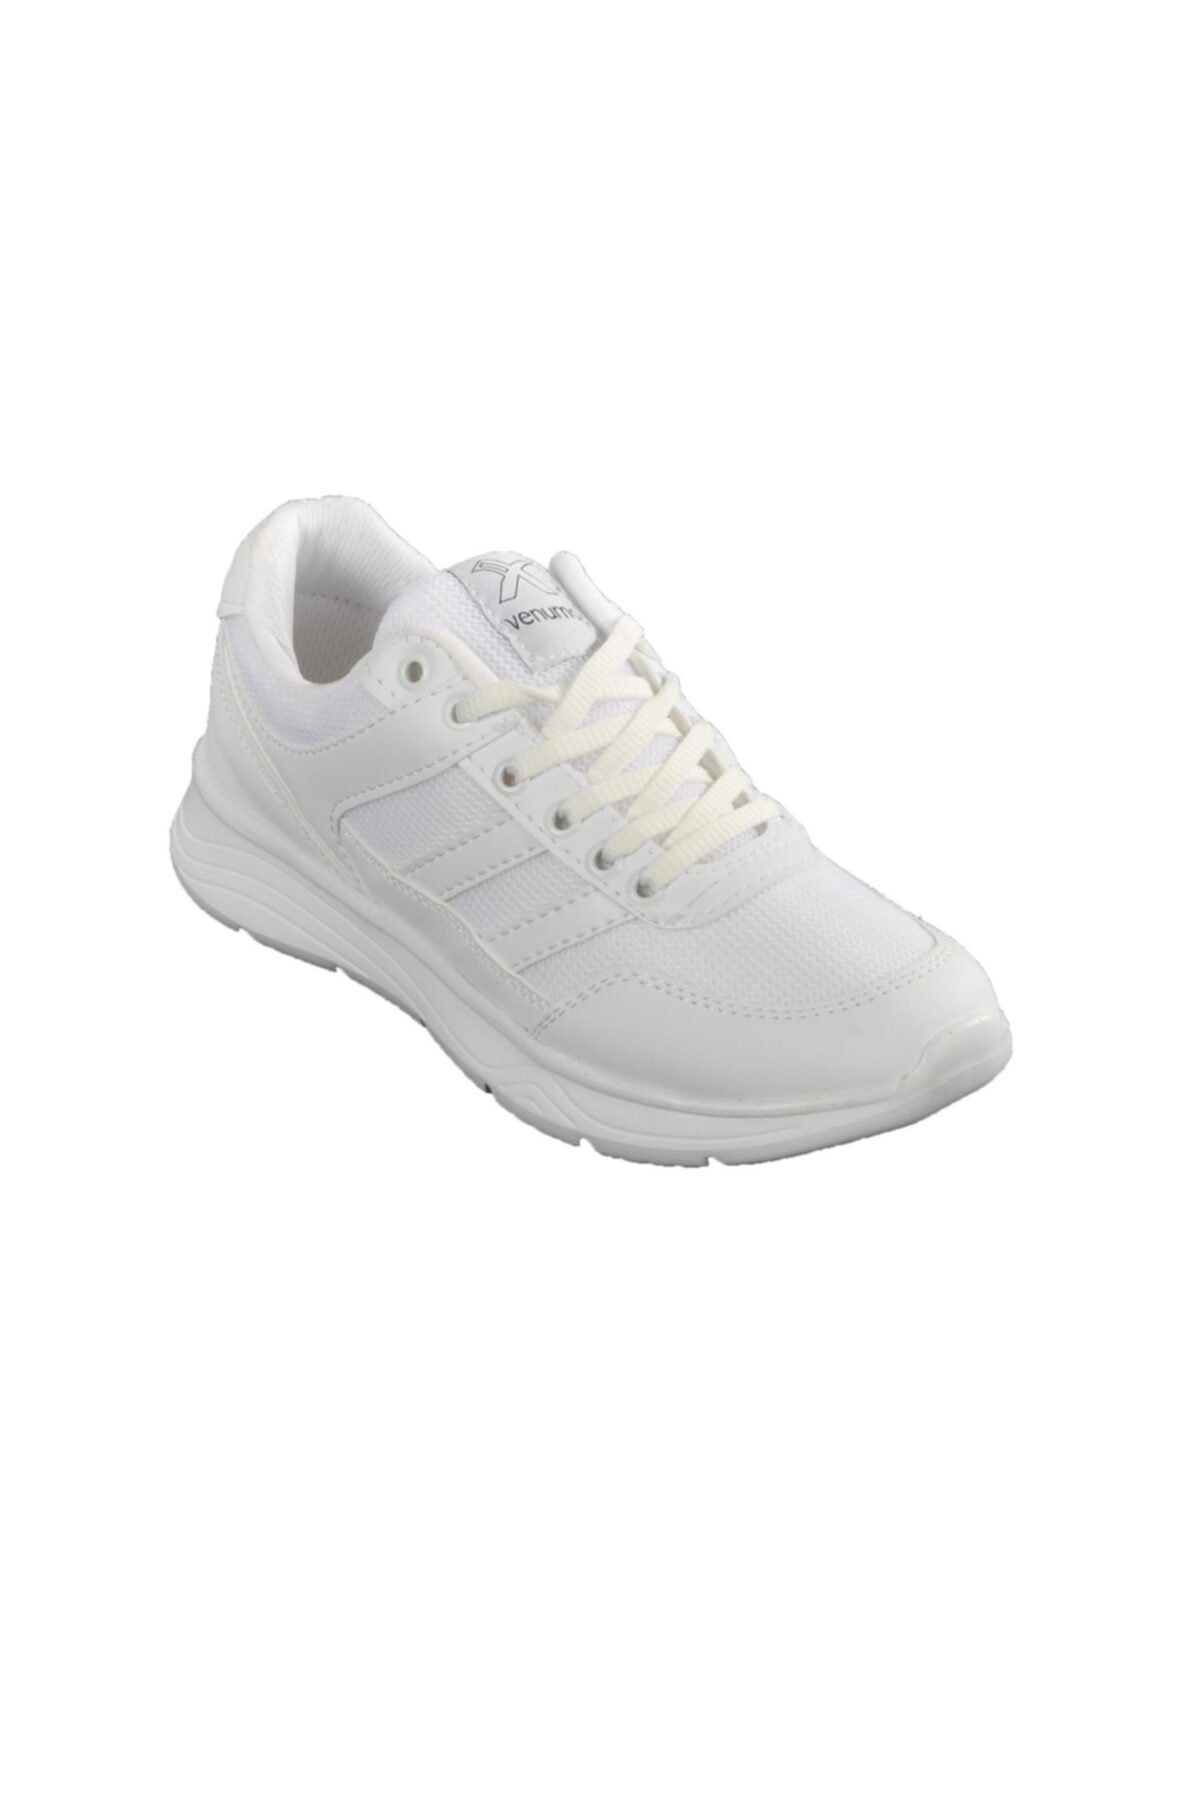 Venuma Unisex Beyaz Spor Ayakkabı 257